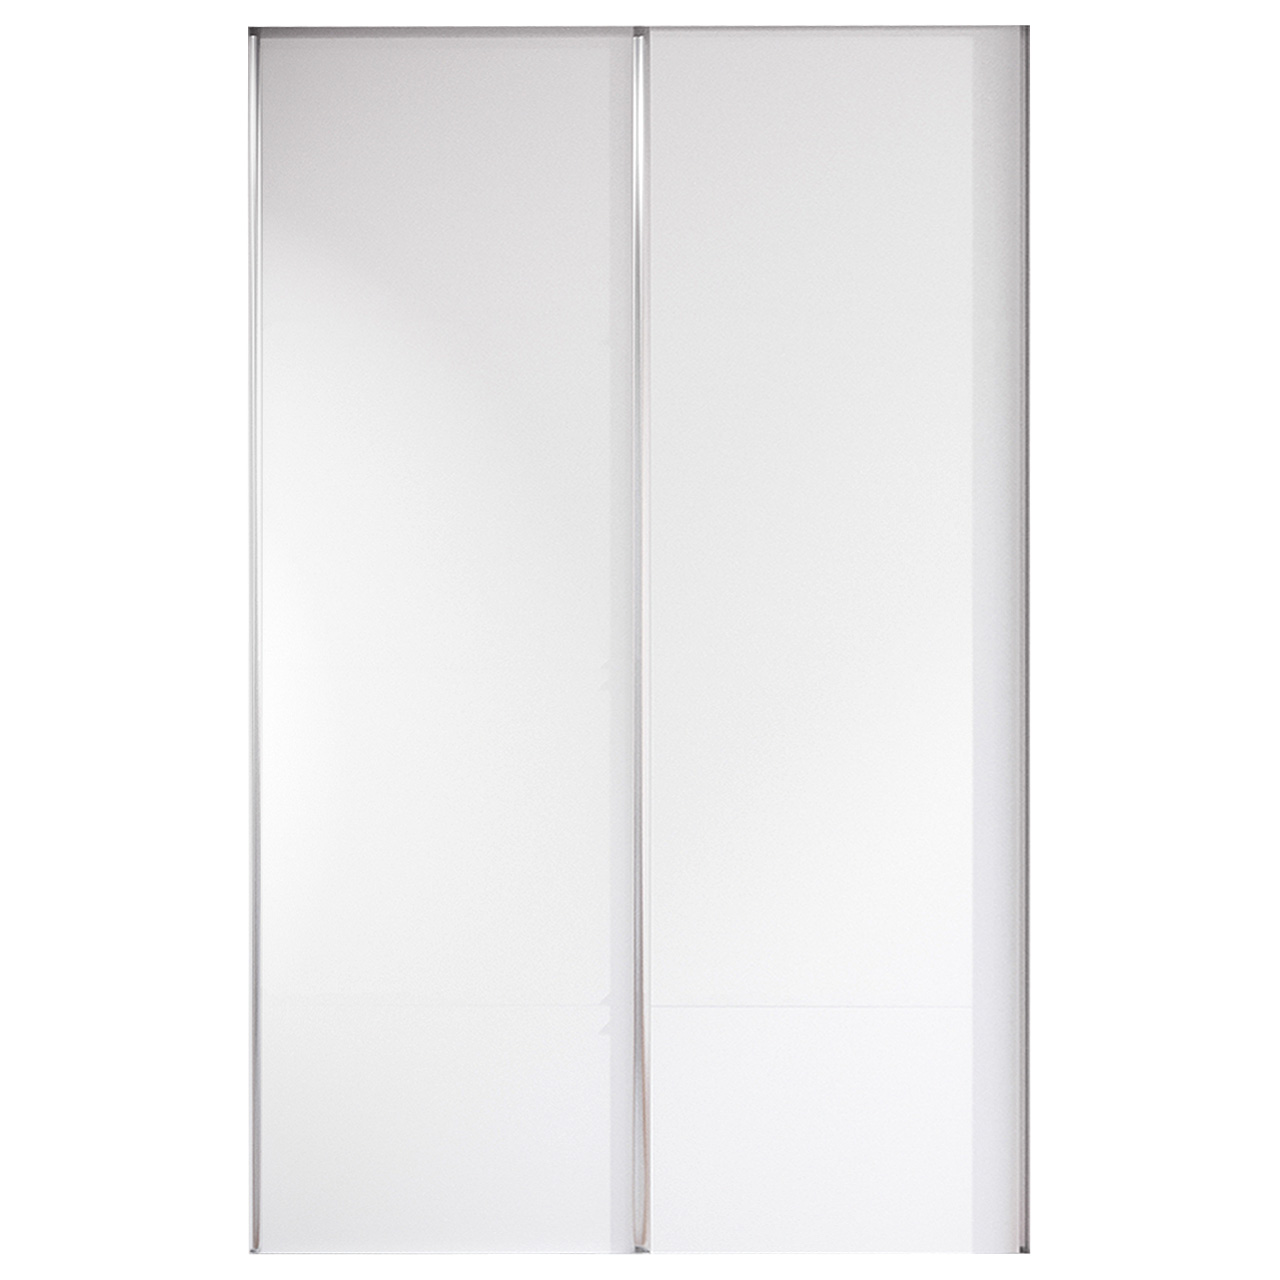 Sliding door for wardrobe MERV F5 120 white